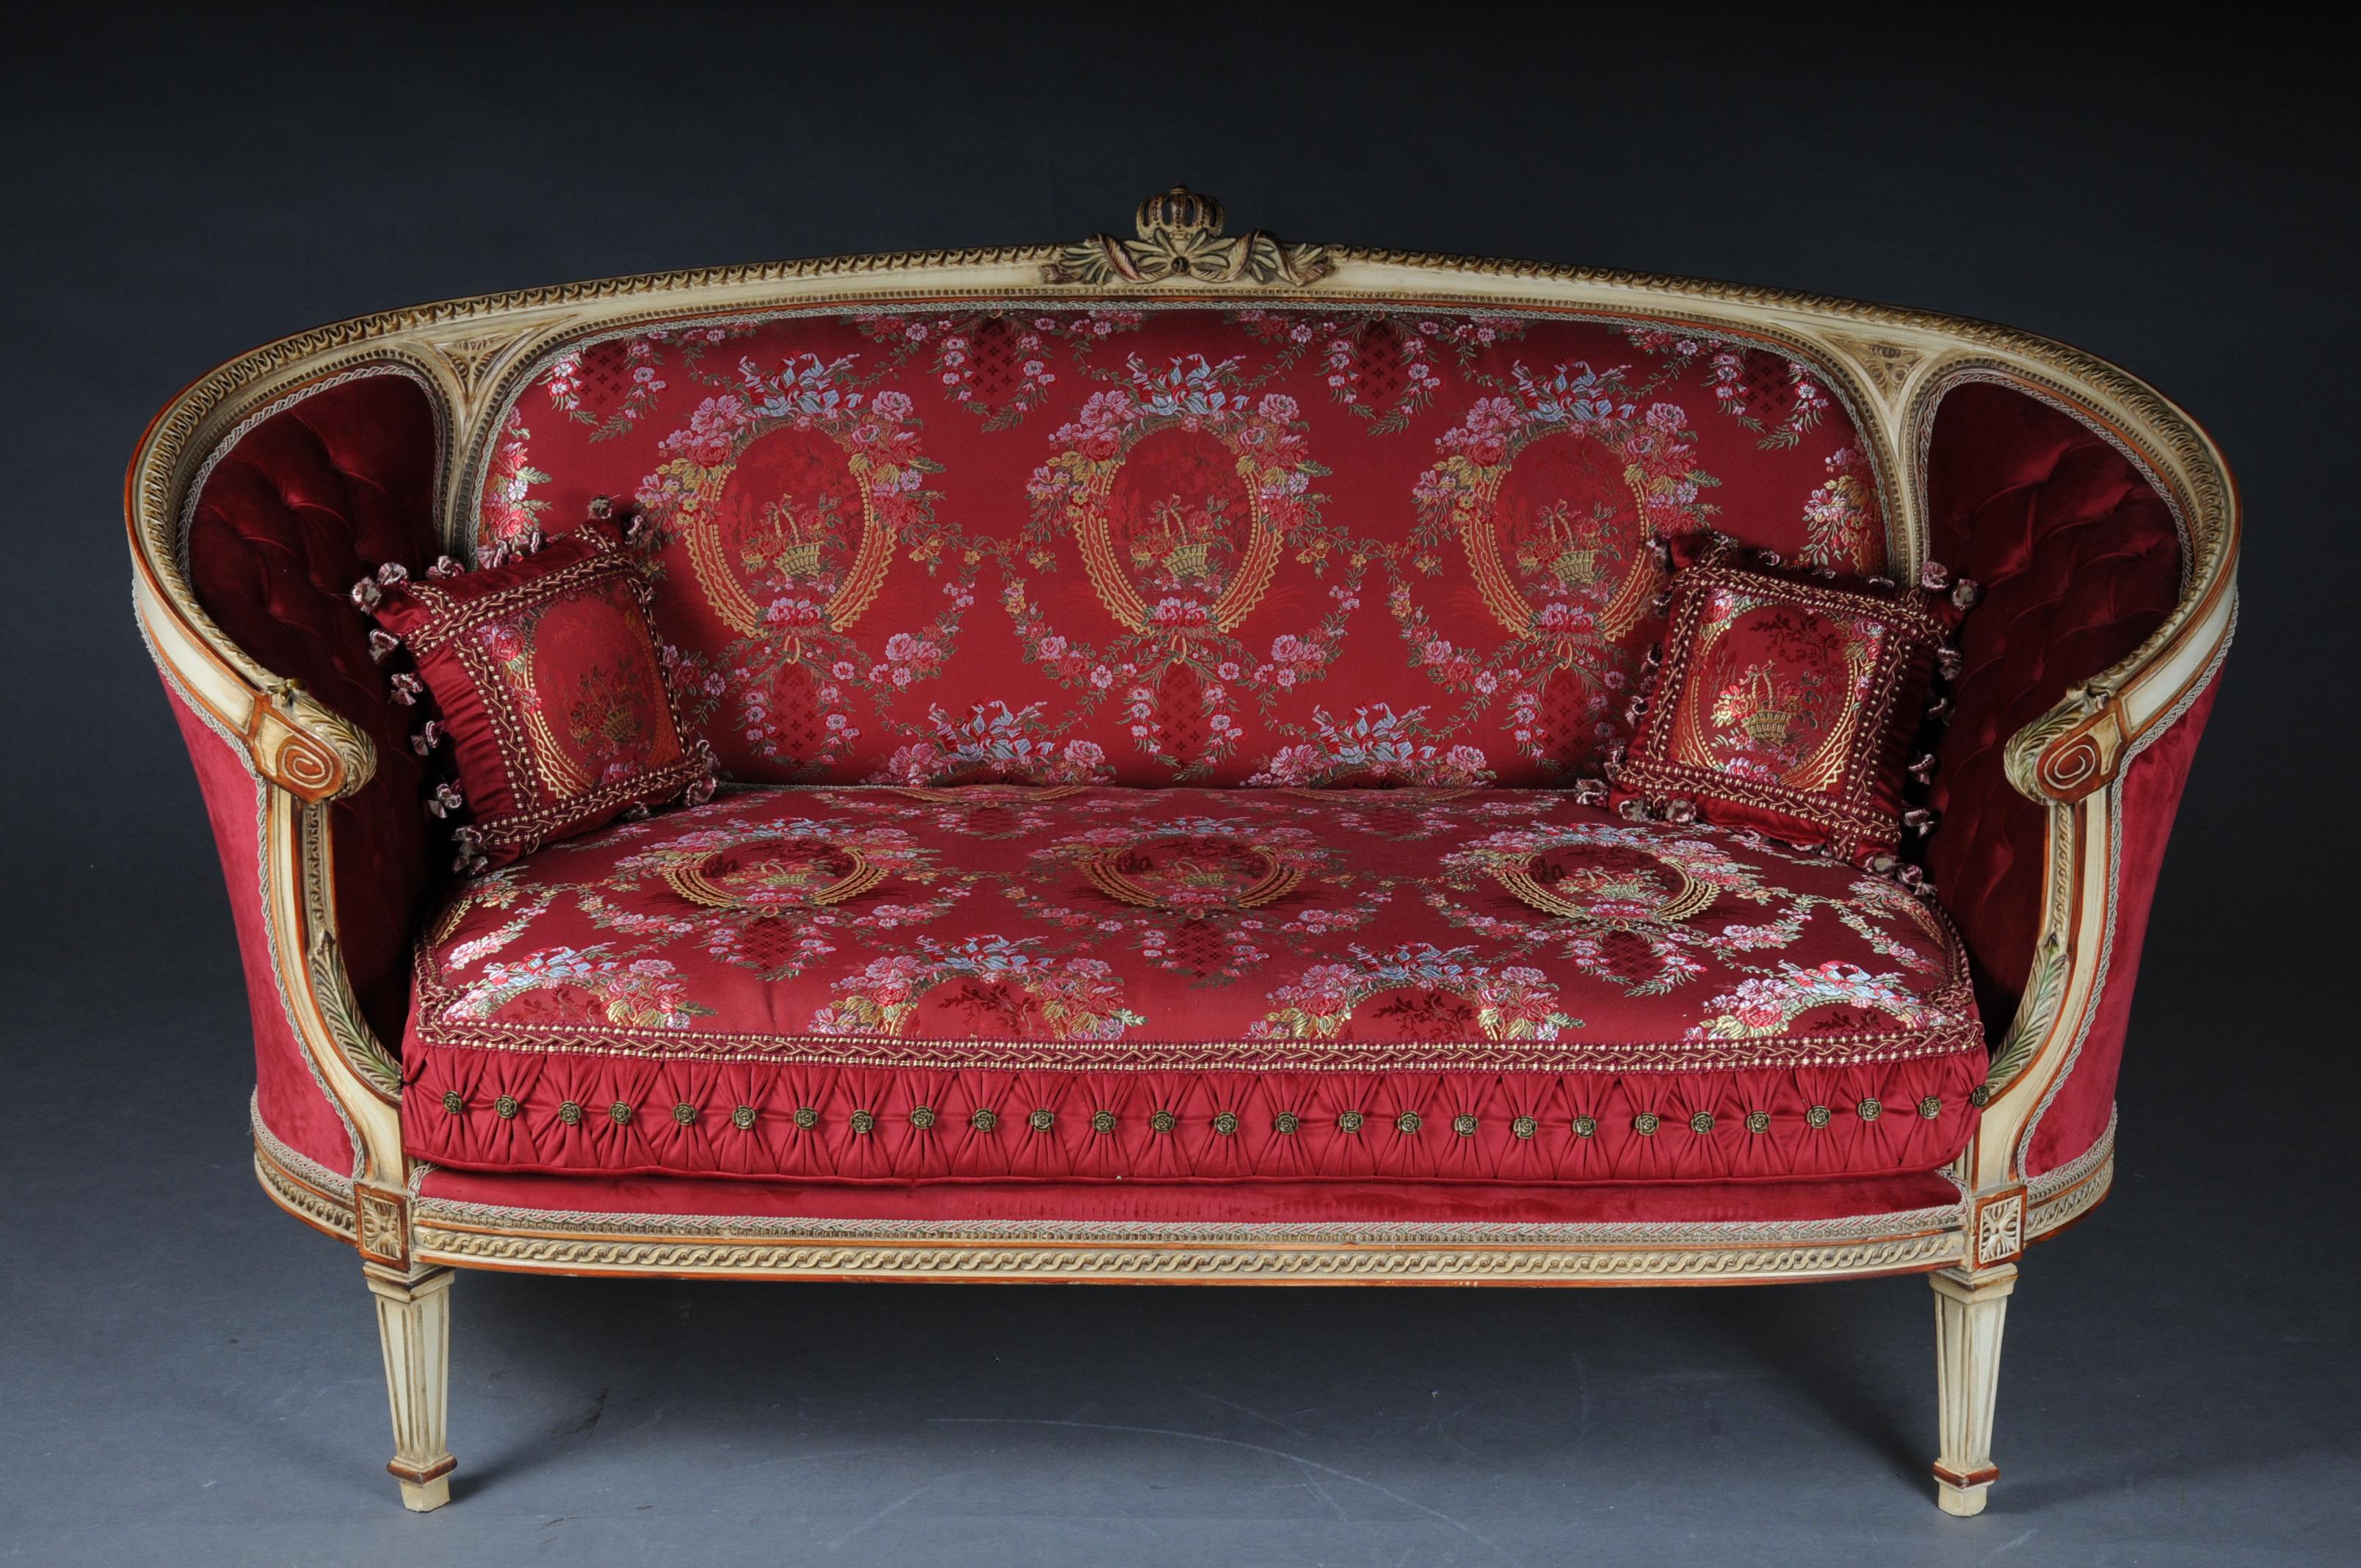 Sièges uniques, ensemble de canapés avec table ovale en taille Louis XVI

Bois de hêtre massif, sculpté et doré. Encadrement du dossier en demi-cercle ascendant avec couronnement rocaille. L'assise et le dossier sont dotés d'un revêtement